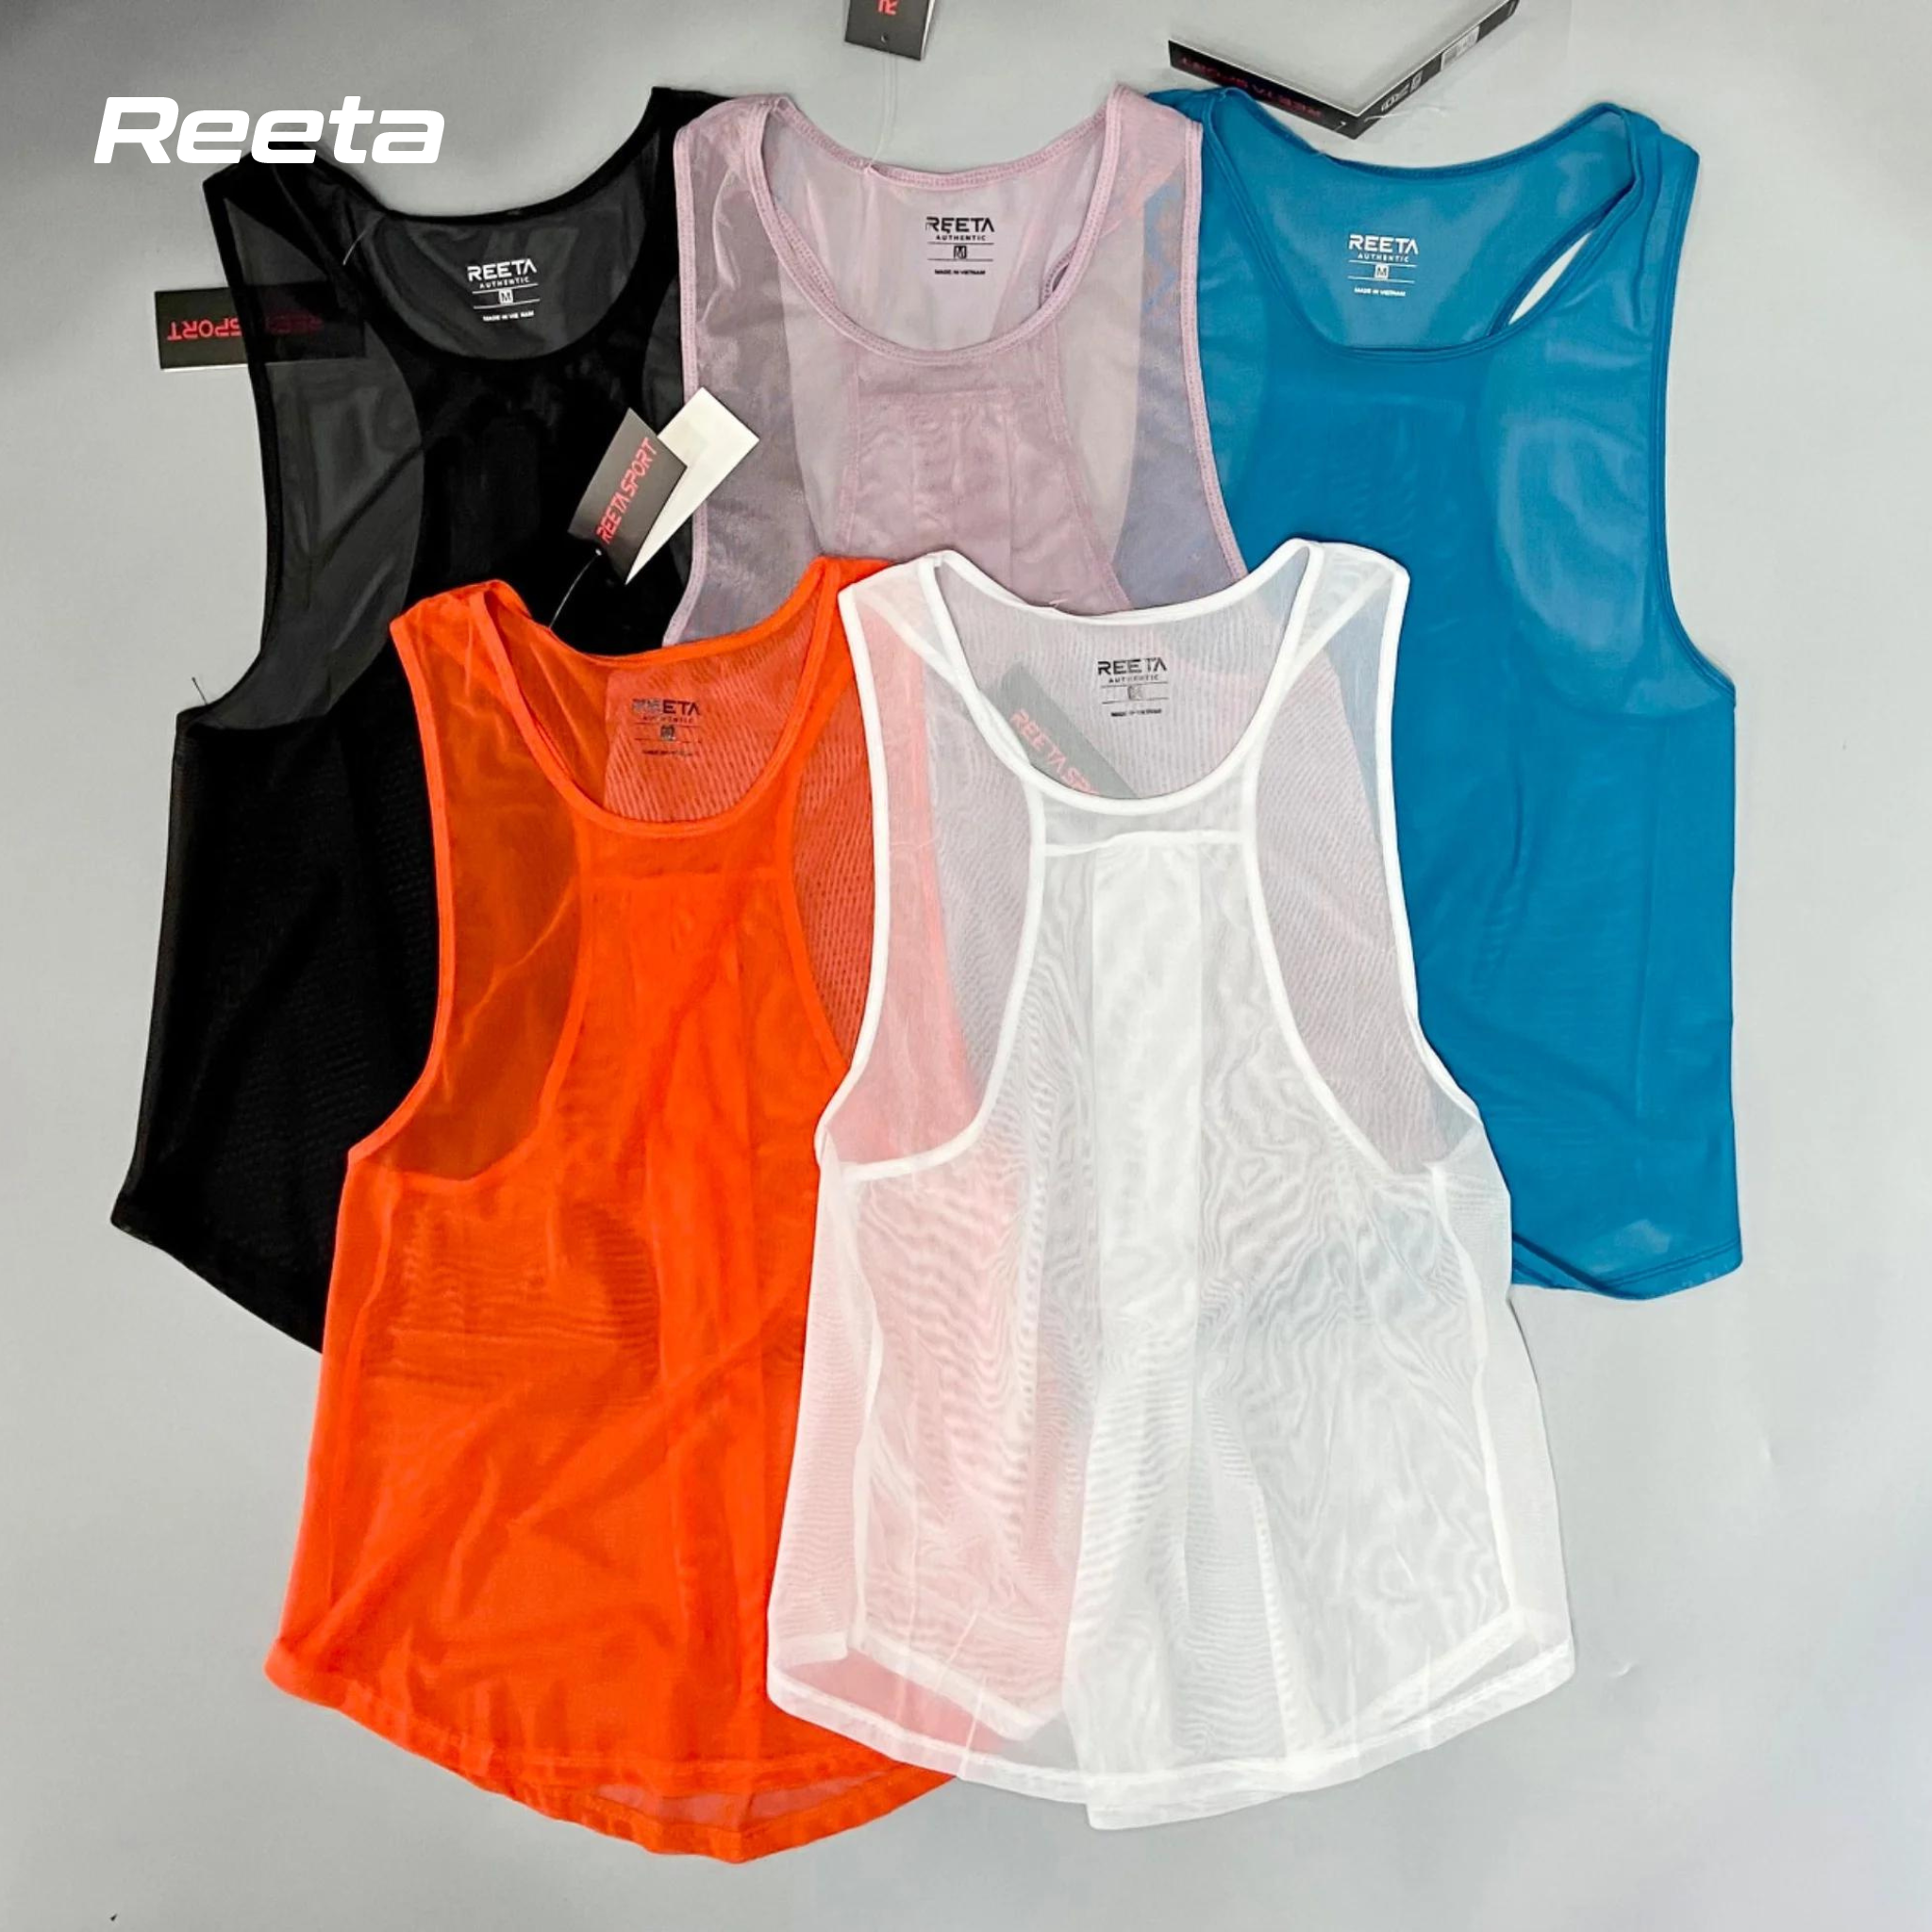 Áo Tanktop nữ REETA thoải mái tập Gym, Yoga với chất vải thun lưới đa dạng màu sắc - A1697